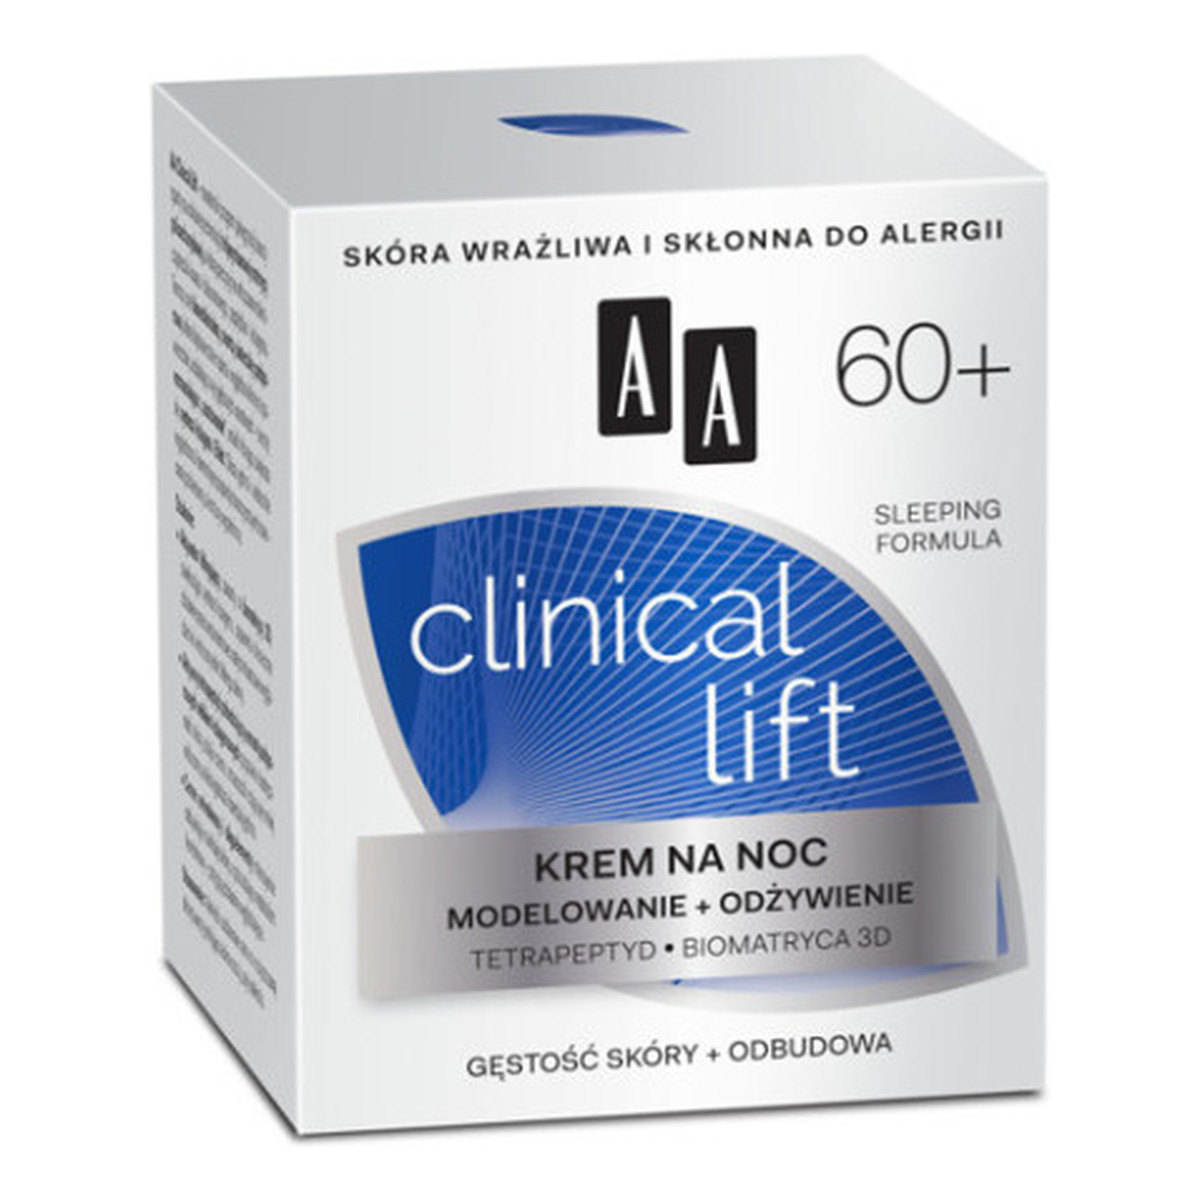 AA 60+ Clinical Lift Krem Do Twarzy Na Noc Modelowanie i Odżywienie 50ml